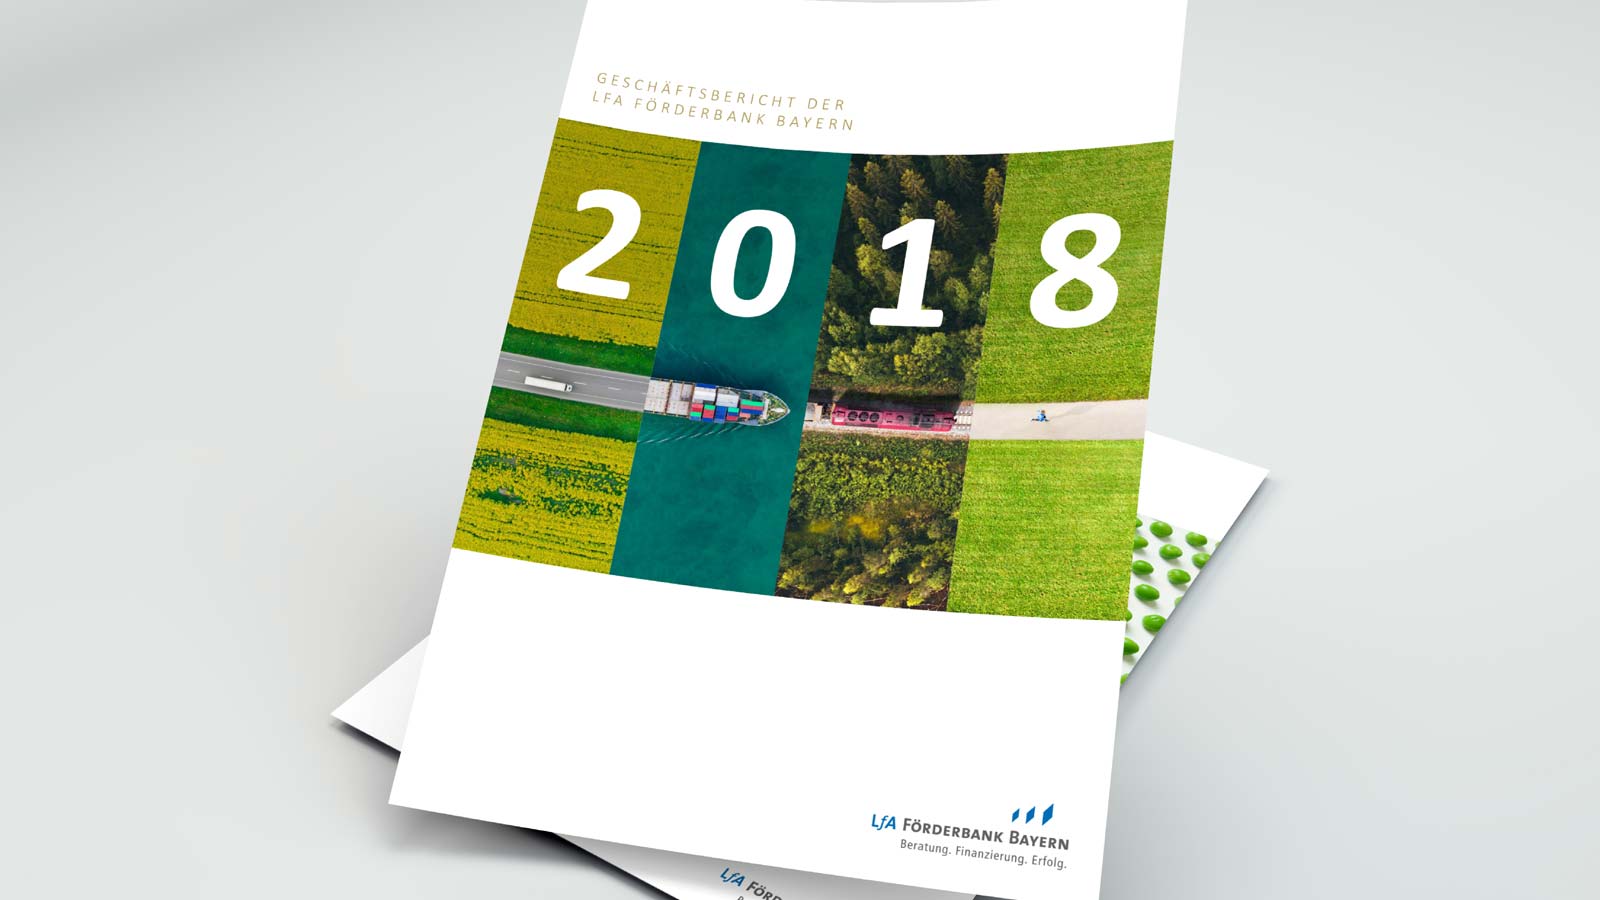 Download Titelseite Geschäftsbericht der LfA Förderbank Bayern 2018